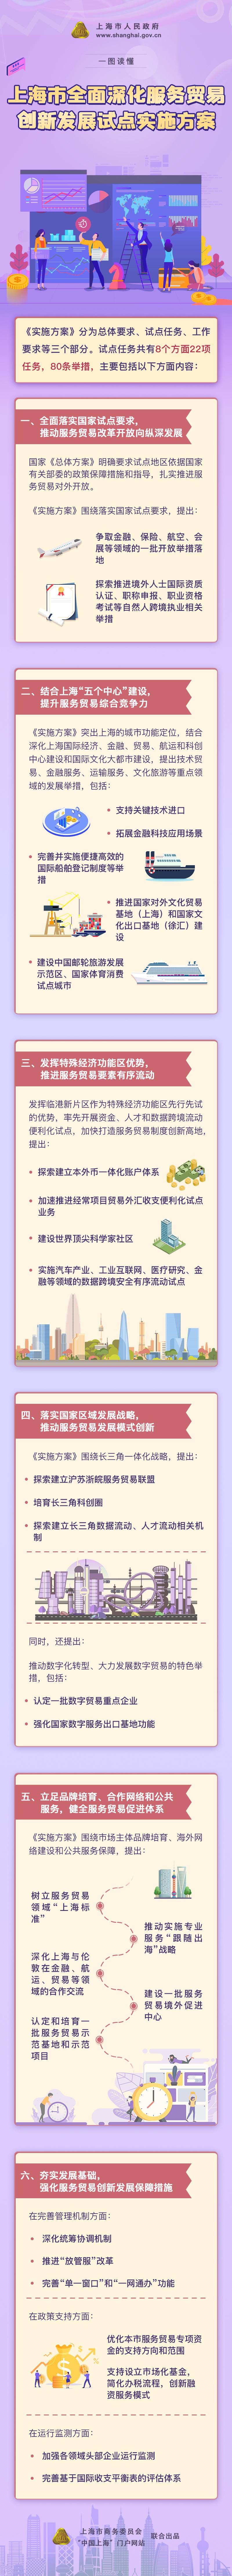 探索本外币一体化账户、推动超大开放算力平台落户……这是上海服贸创新试点新规